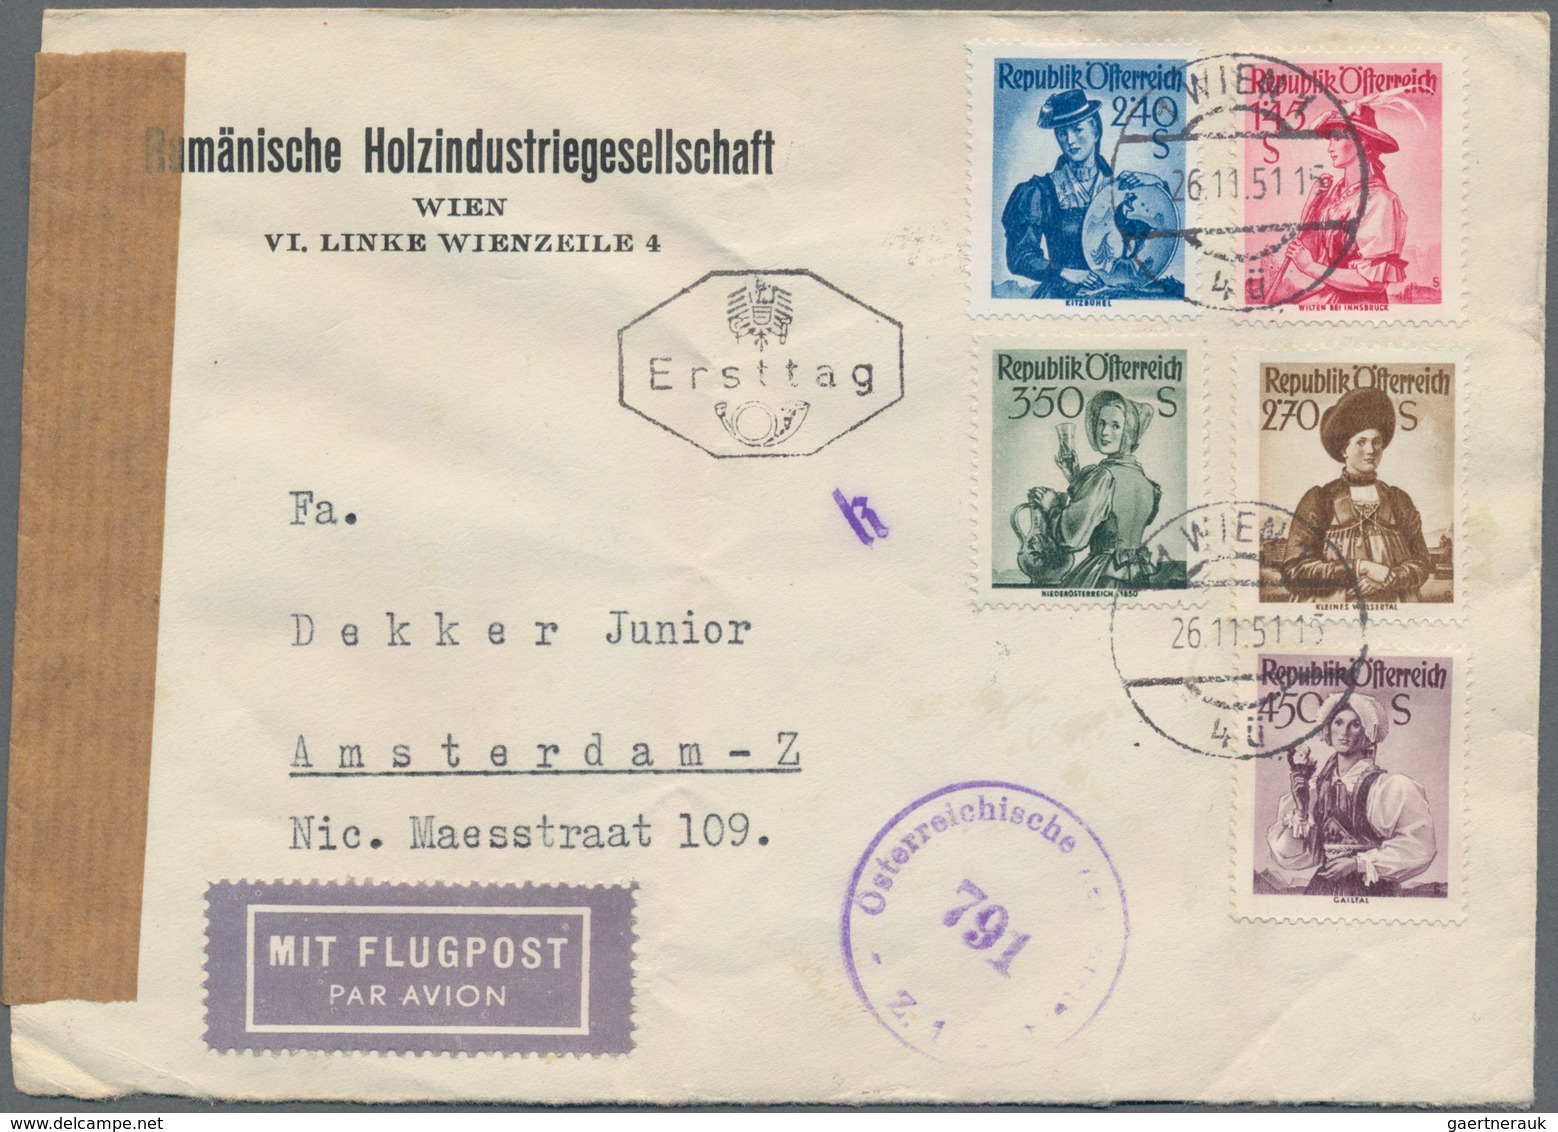 Österreich: 1945-1965, Leitz Ordner gefüllt mit FDC aus dem genanntem Zeitraum, dabei auch komplette